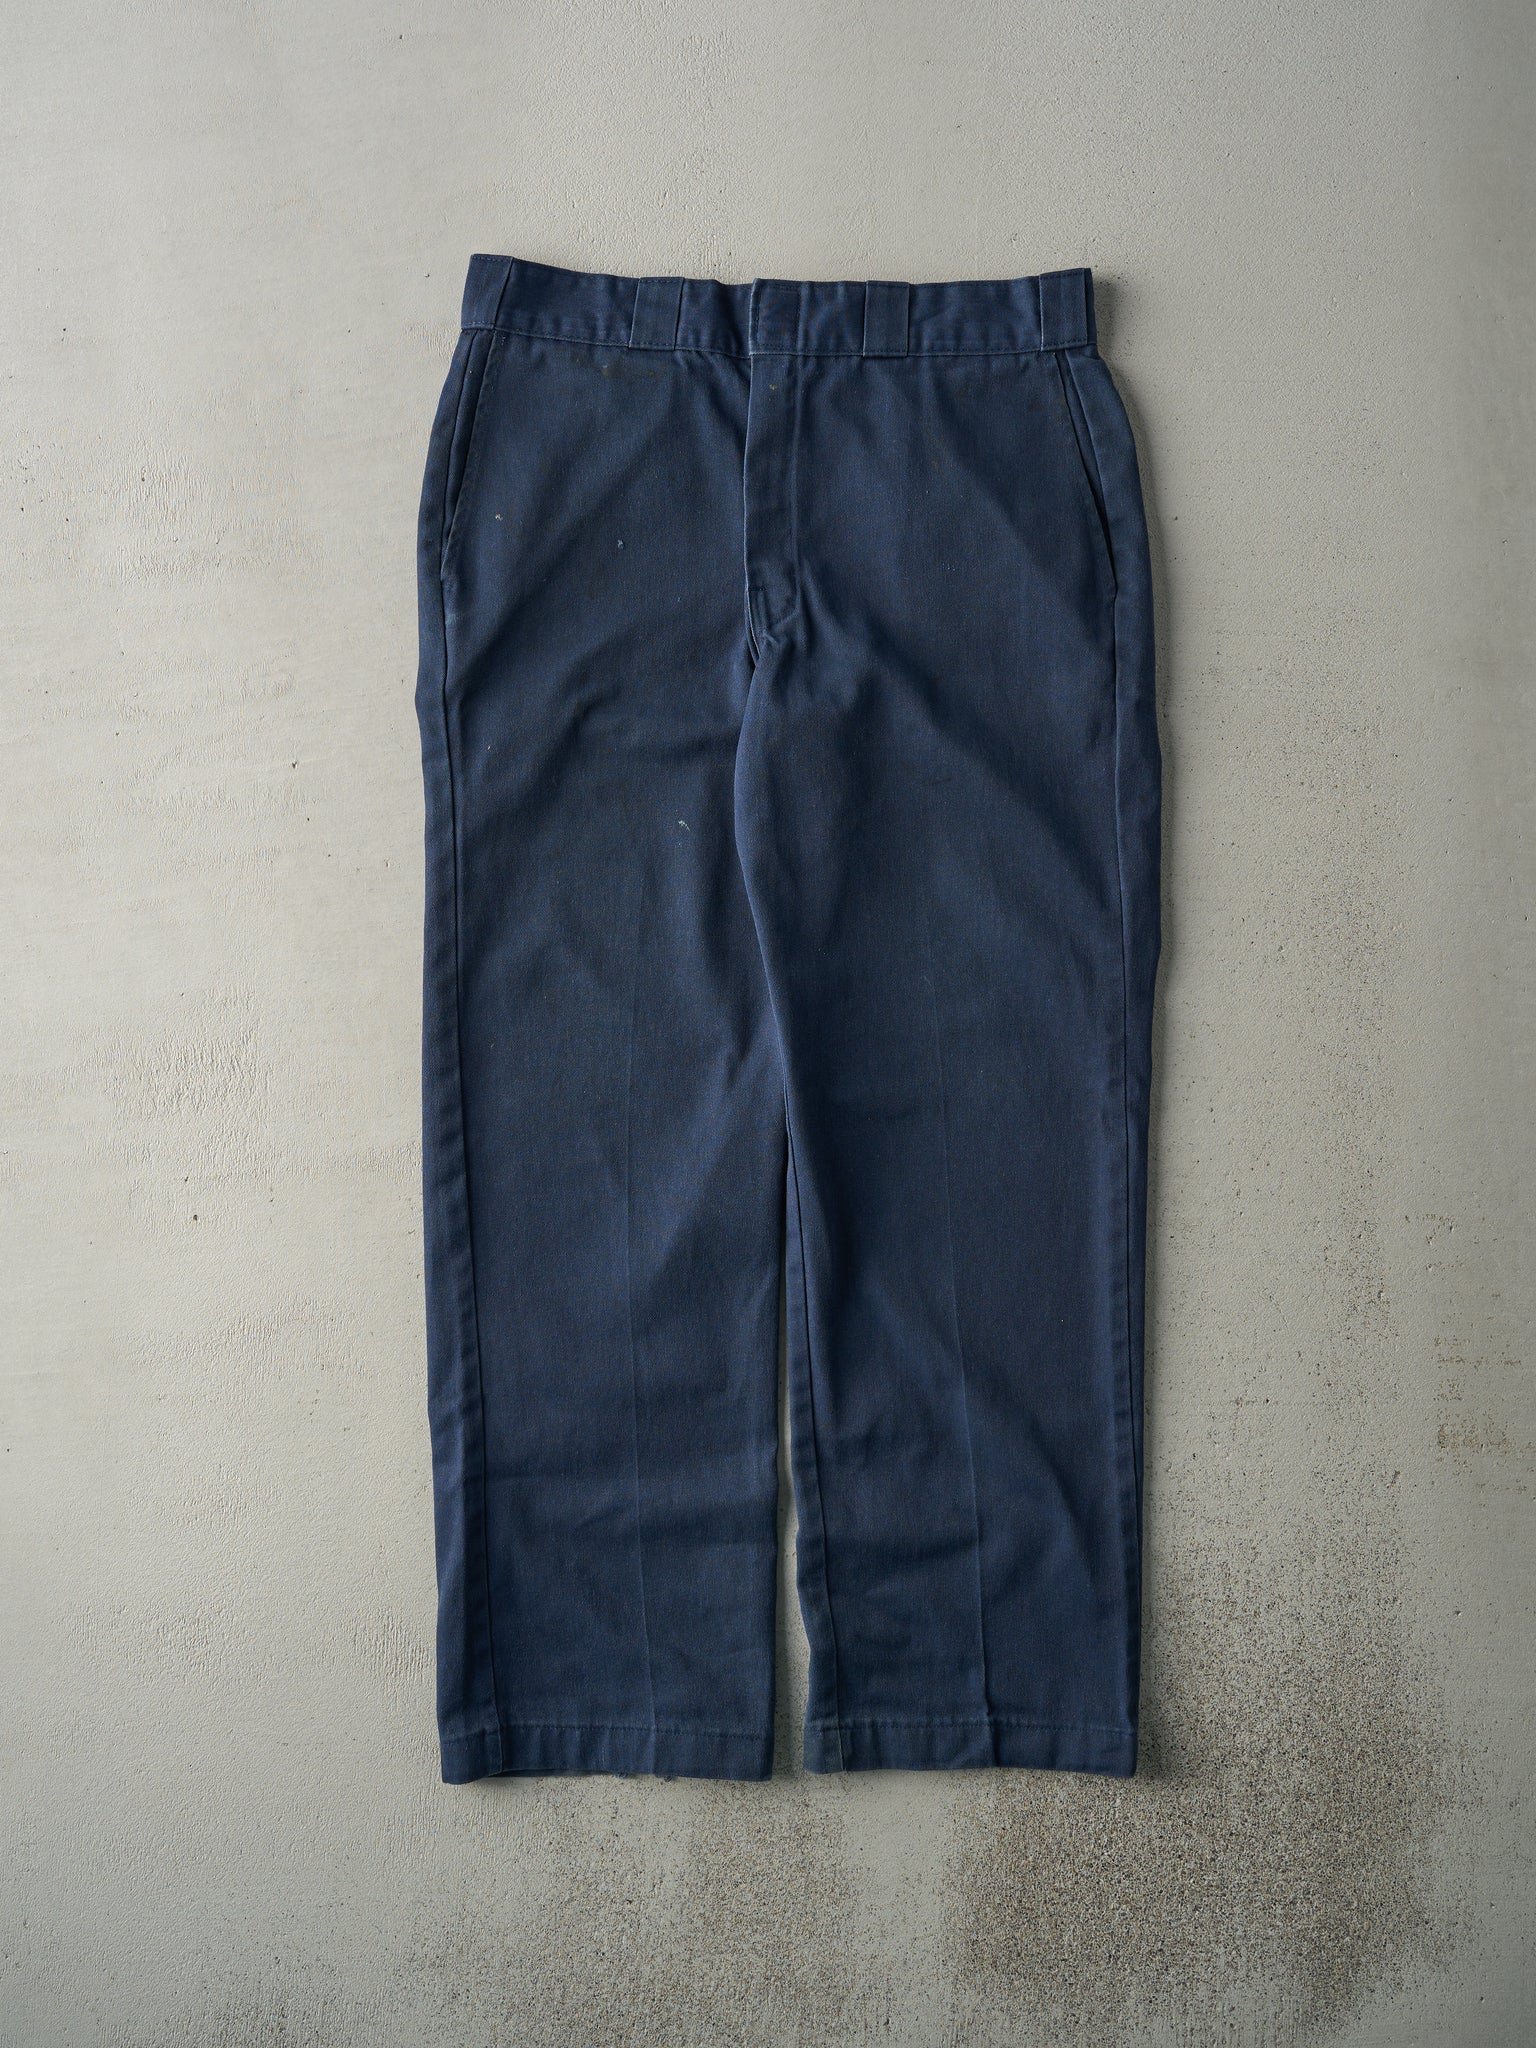 Vintage 90s Navy Blue Dickies Work Pants (34x29)